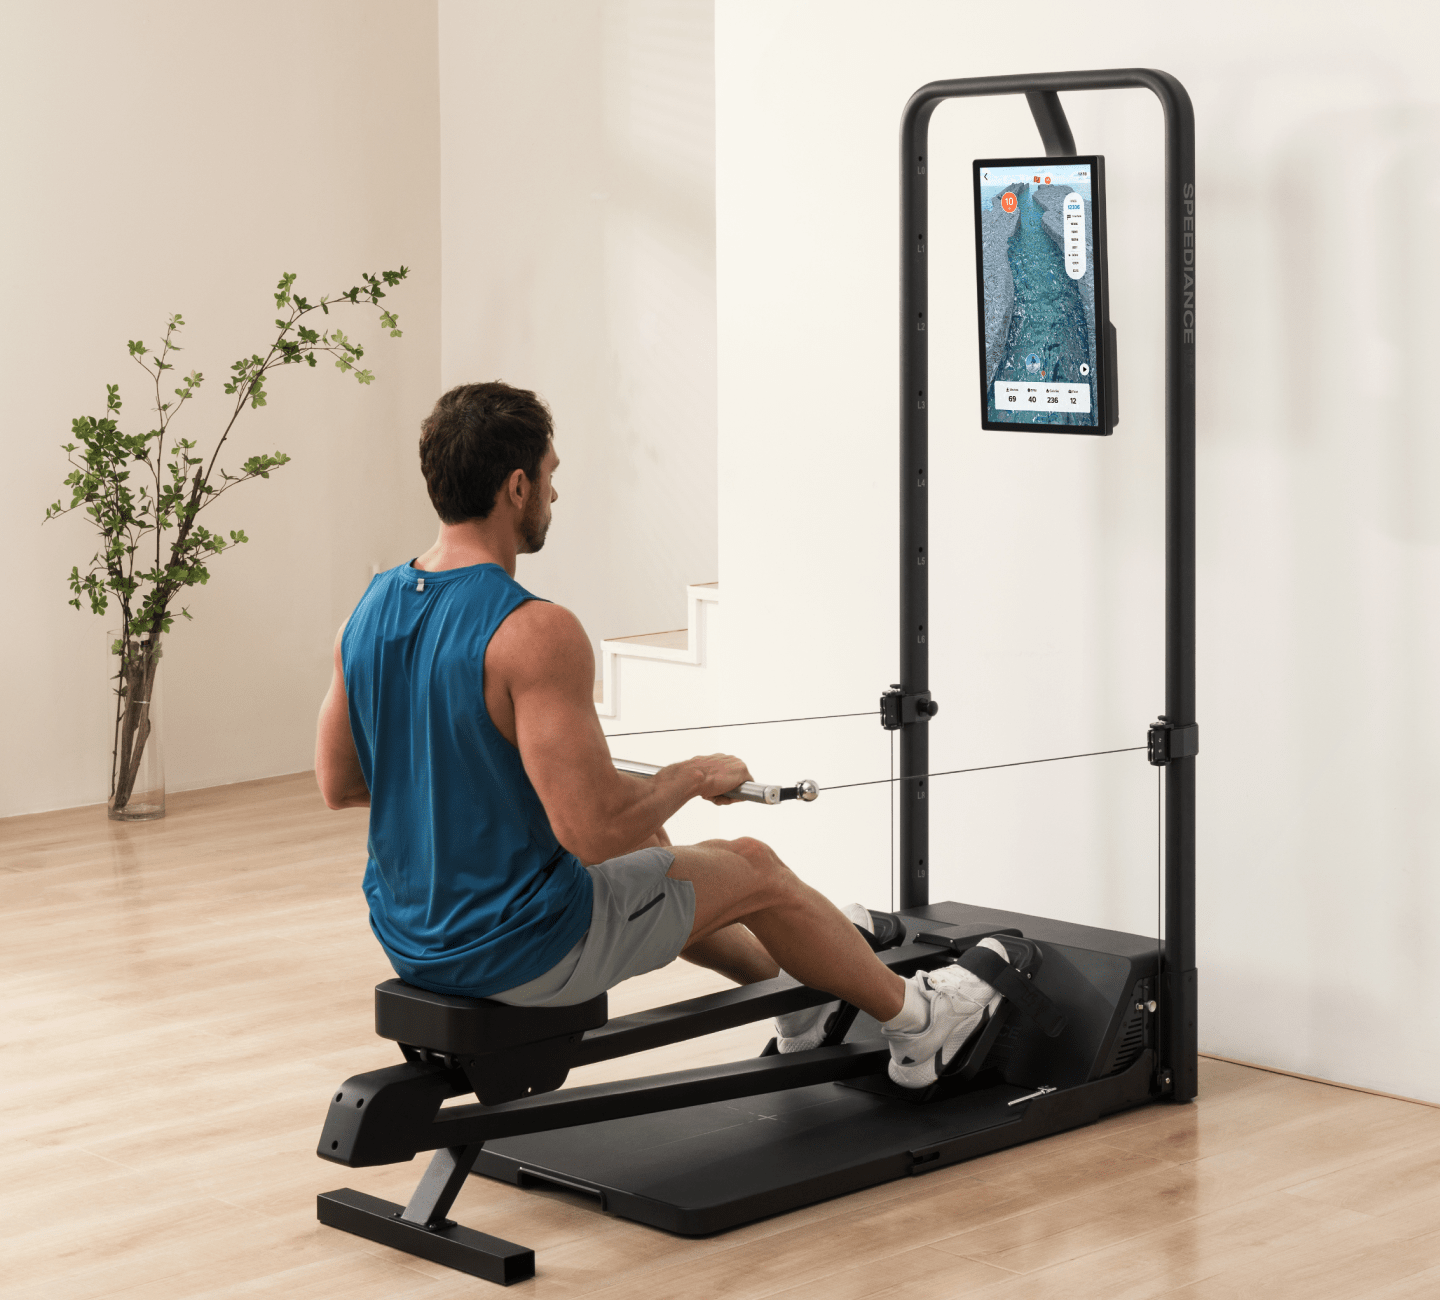 Speediance Digital Smart Home Gym Workout